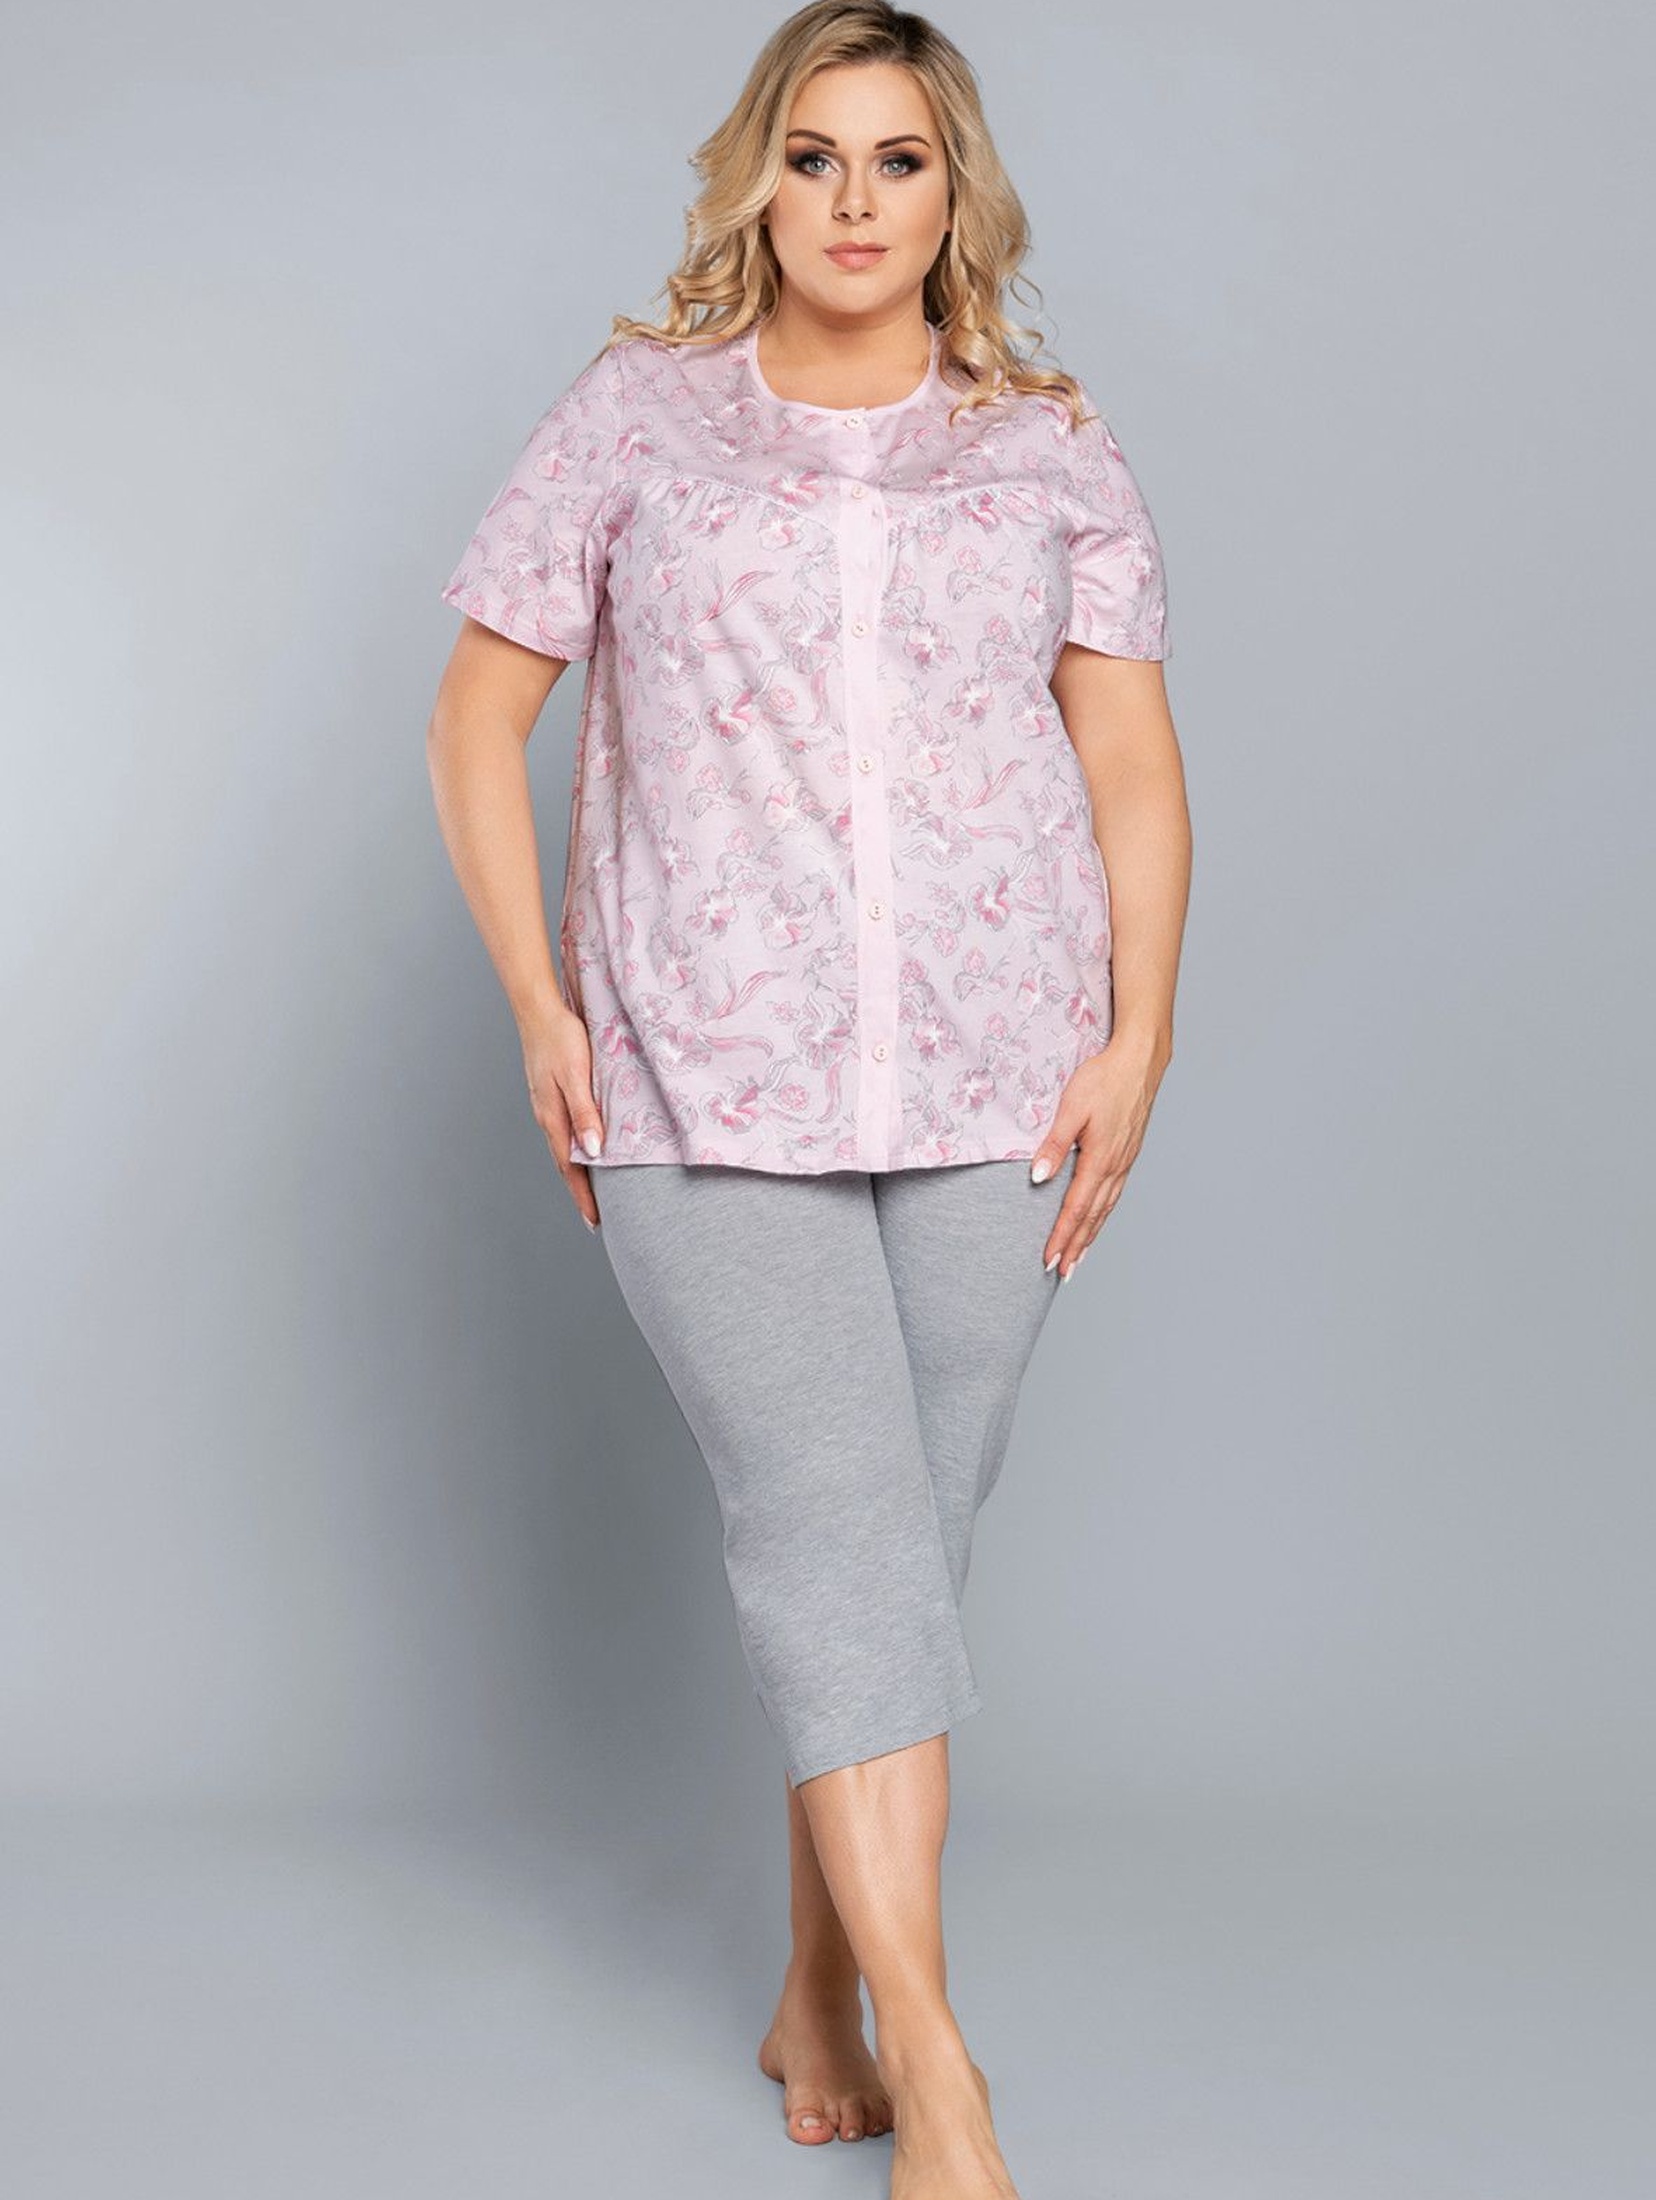 Dwuczęściowa piżama damska- różowa bluzka we wzorki na krótki rękaw + szare spodnie 3/4 nogawka